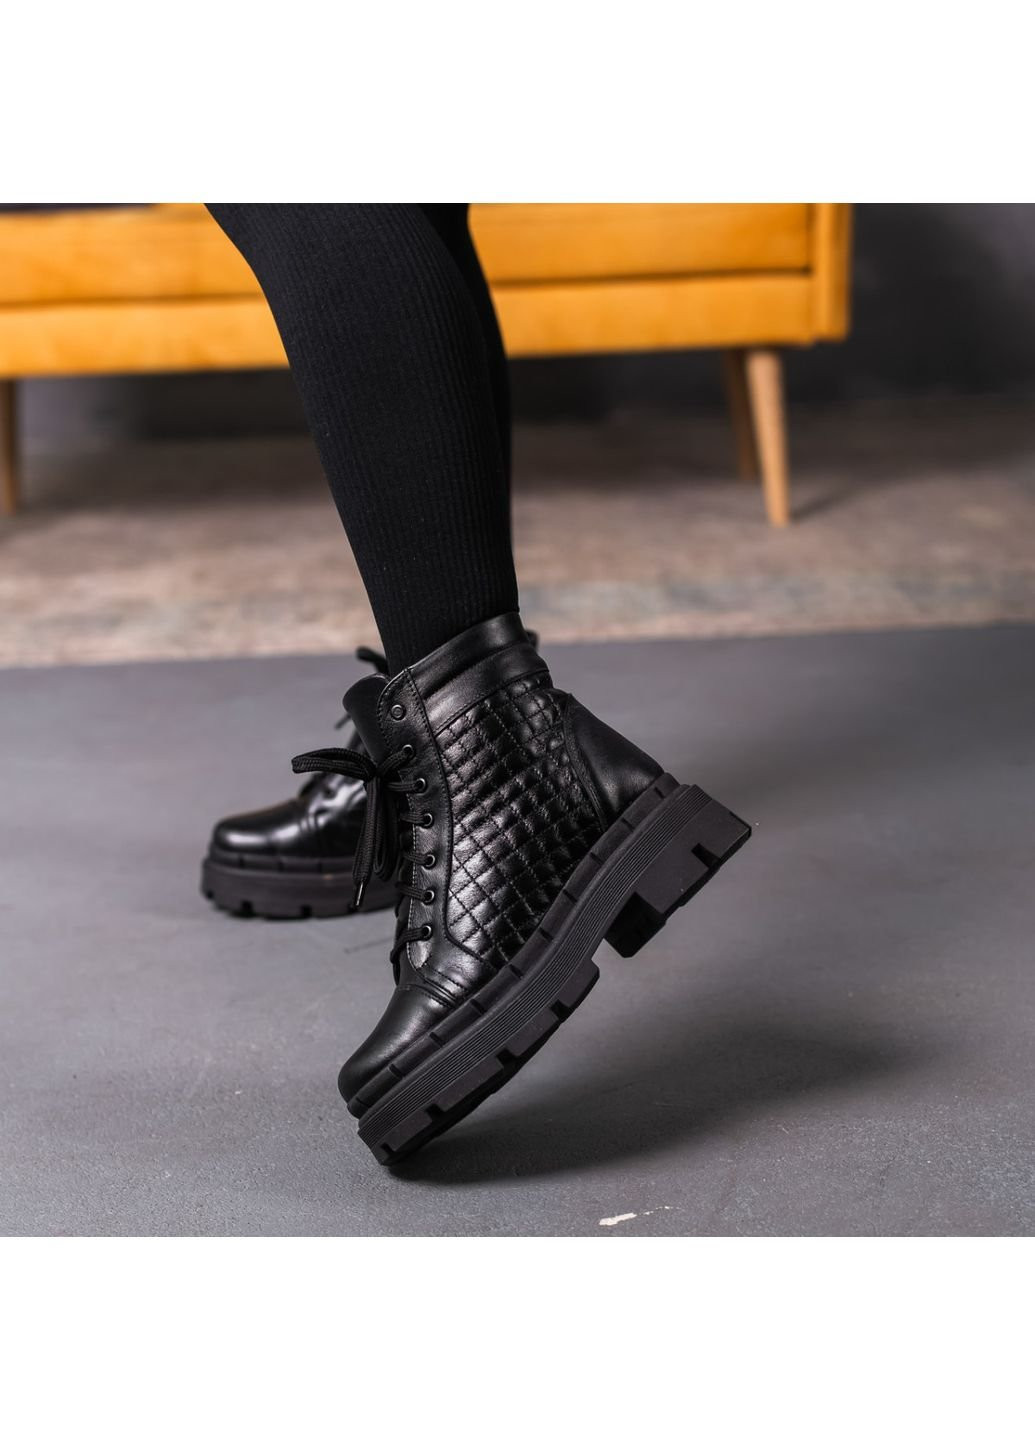 Зимние ботинки женские зимние argo 3392 40 25,5 см черный Fashion